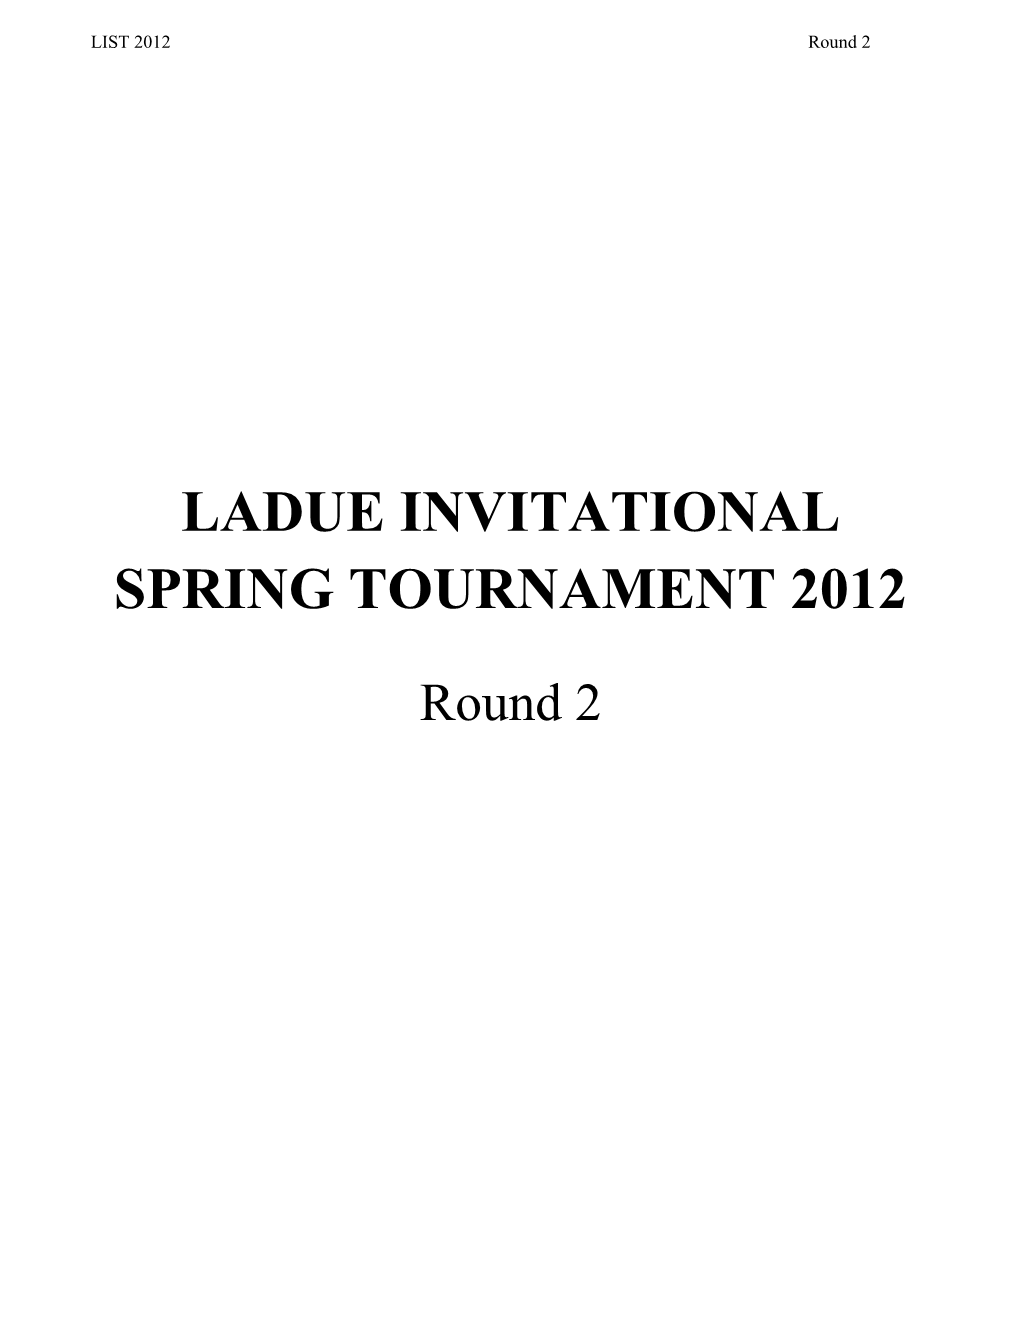 Ladue Invitational Spring Tournament 2012